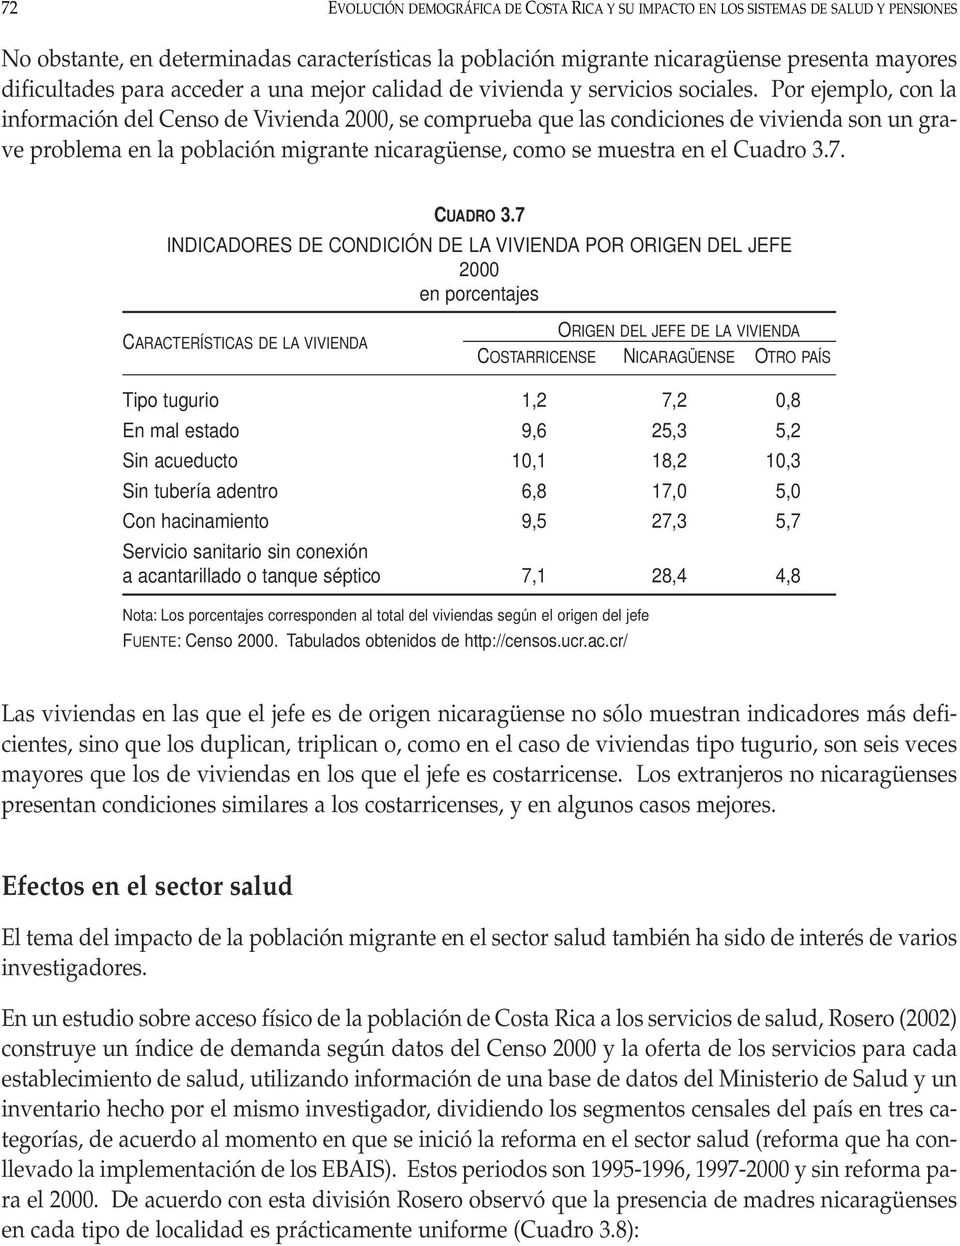 Por ejemplo, con la información del Censo de Vivienda 2000, se comprueba que las condiciones de vivienda son un grave problema en la población migrante nicaragüense, como se muestra en el Cuadro 3.7.